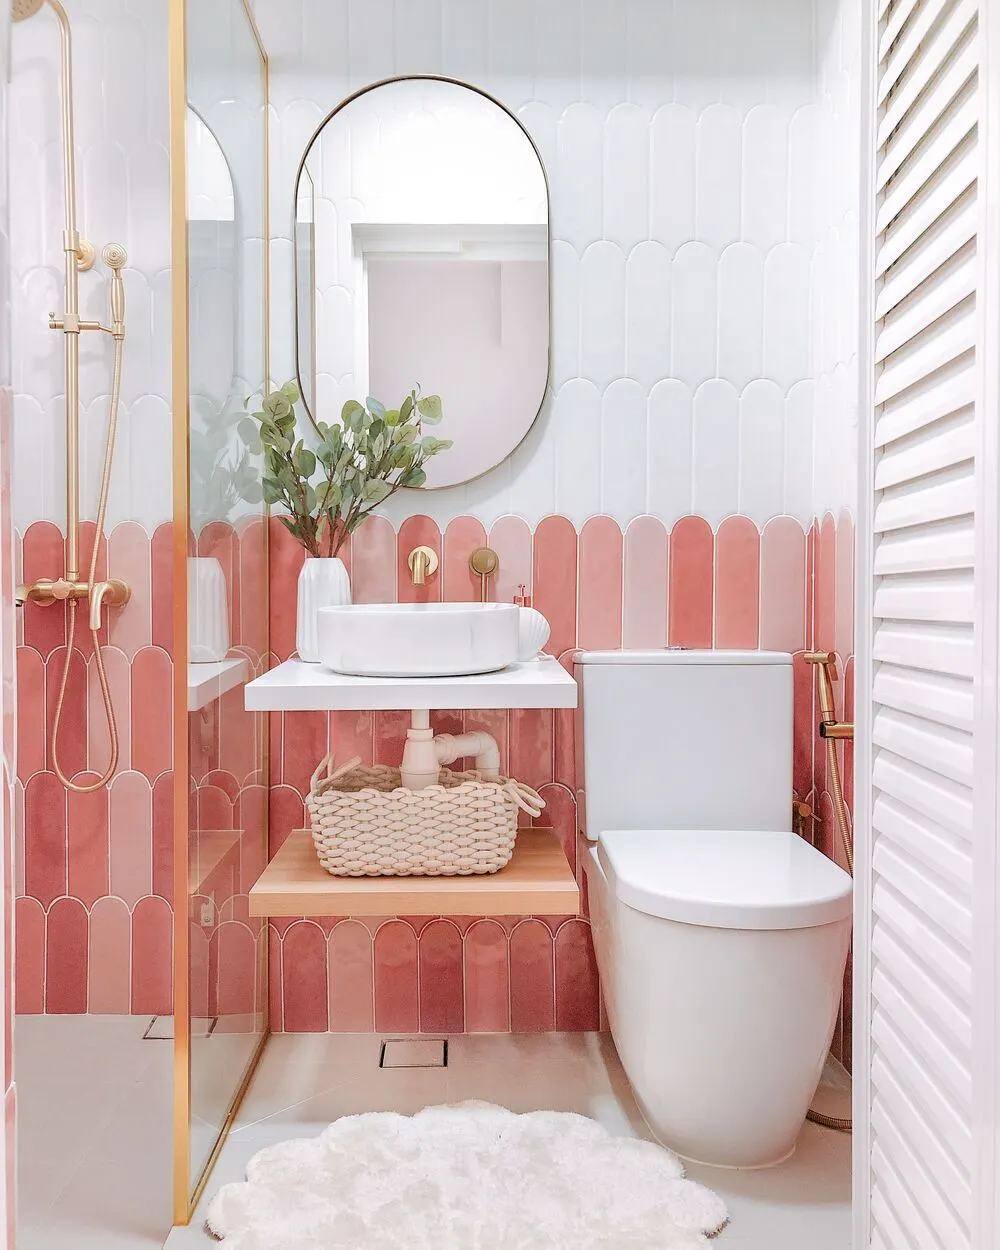 Mẫu bồn tắm đứng kính màu hồng dễ thương